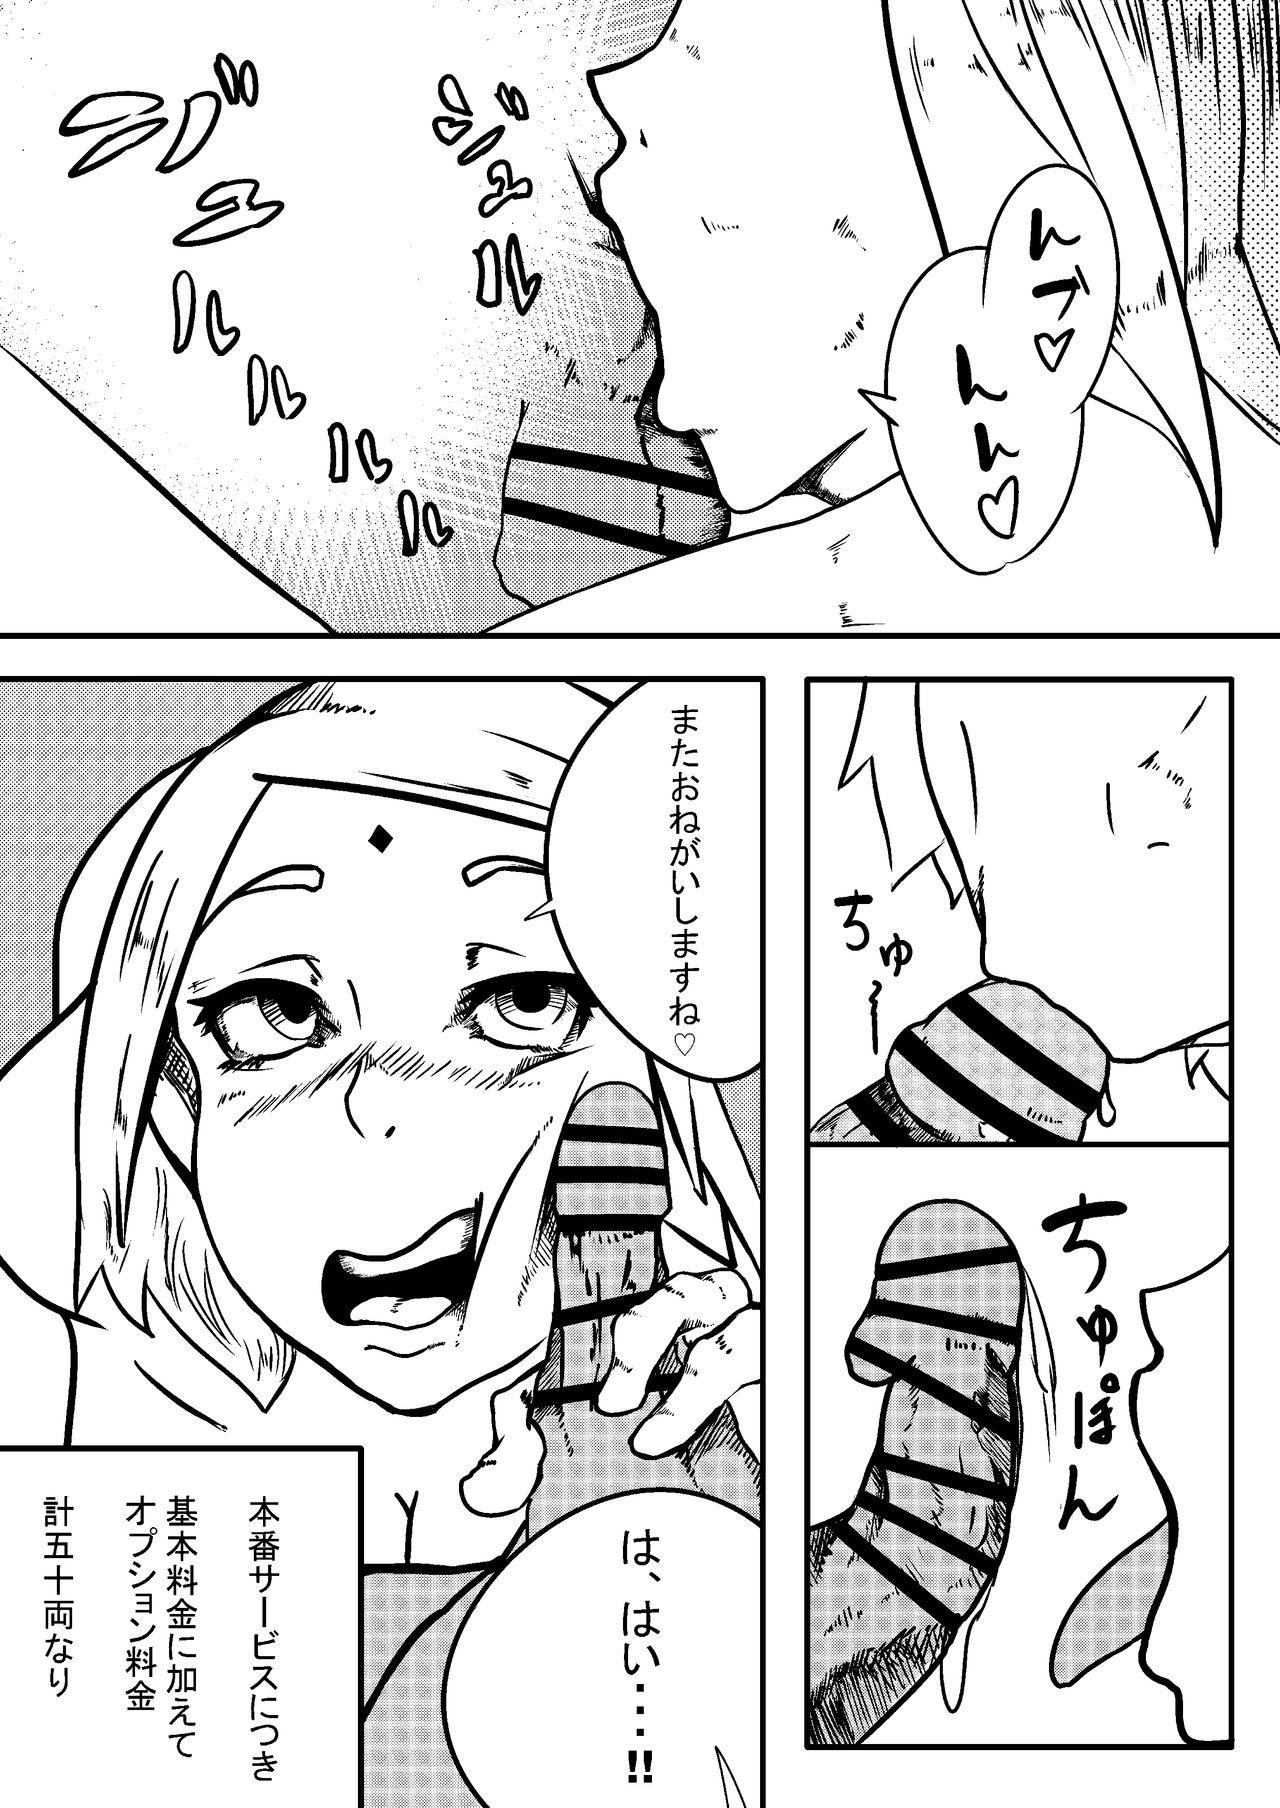 Load NARUTOエロ漫画 デリ忍 サクラ - Boruto Sucking - Page 5